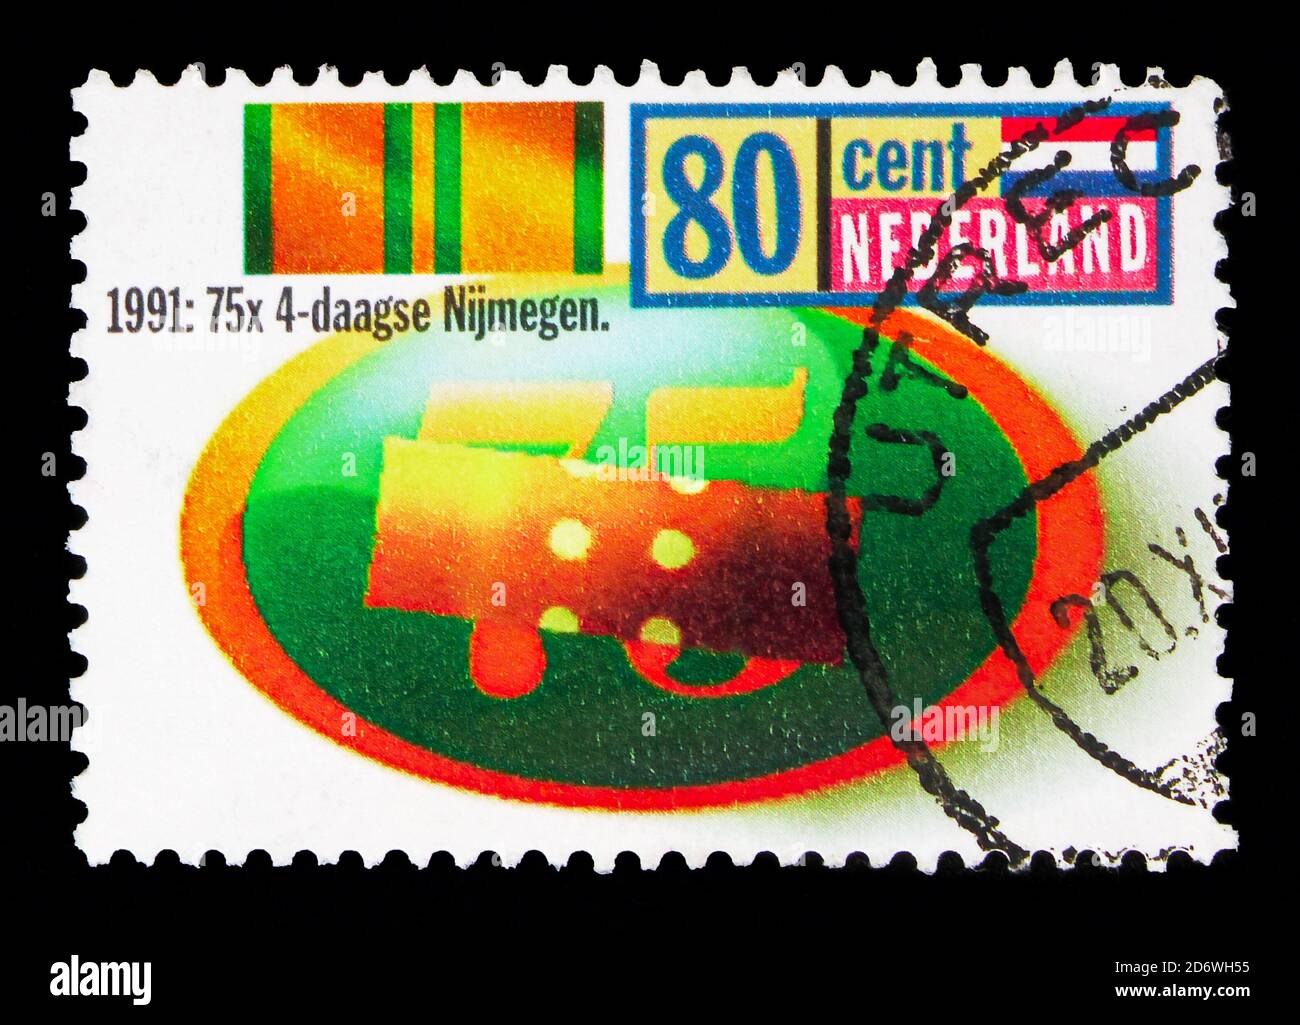 MOSCÚ, RUSIA - 13 DE MAYO de 2018: Un sello impreso en los países Bajos muestra Nijmegen International Four Day Marches, serie, alrededor de 1991 Foto de stock